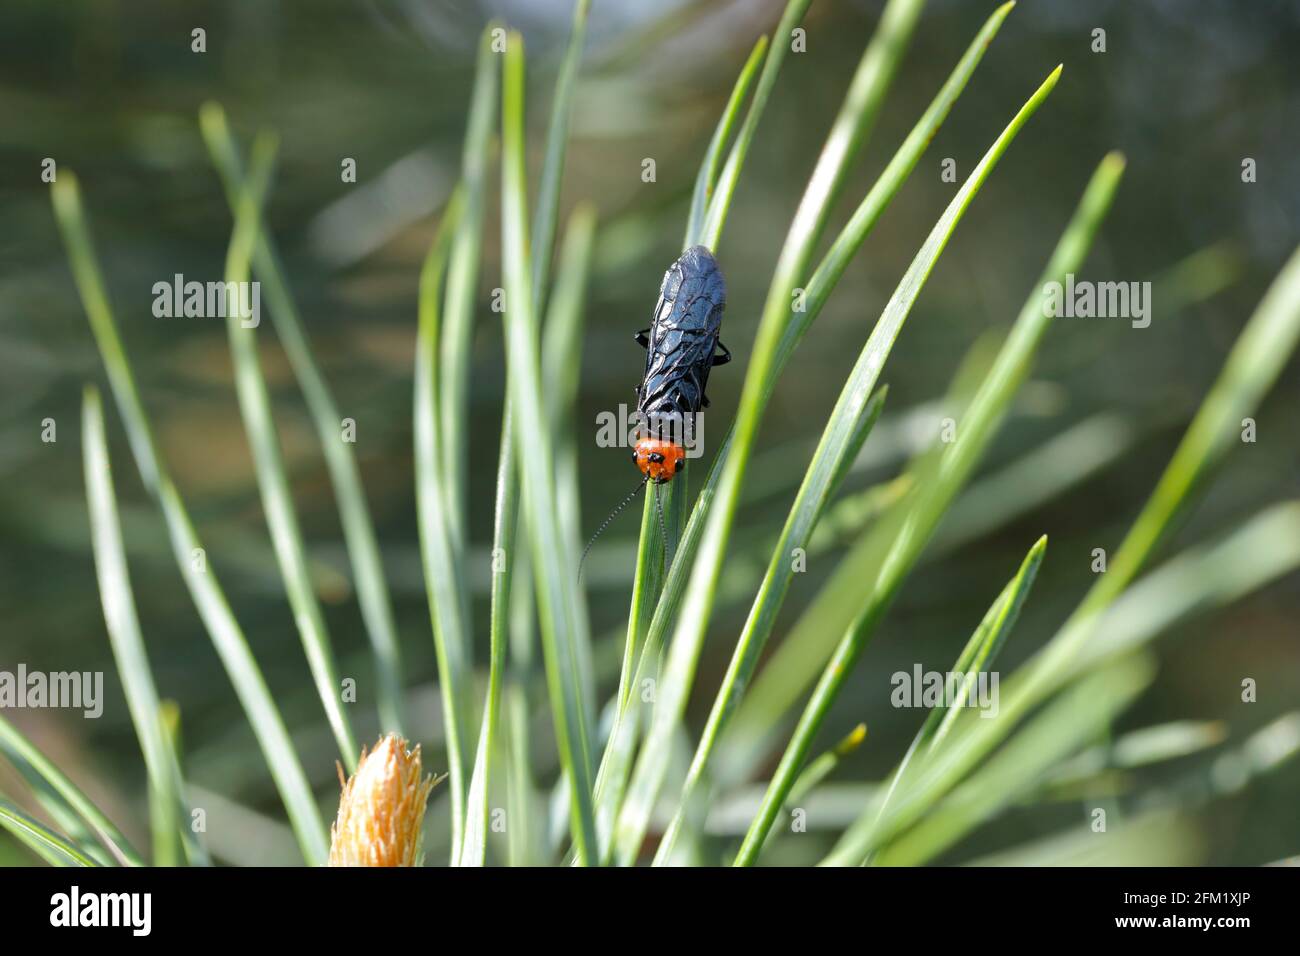 La mosca del pino rosso-testa o il webbworm falso del pino (Acantholyda eritrocephala) ha segato nella famiglia Pamphiliidae nativo in Europa. PINES Pest. Foto Stock